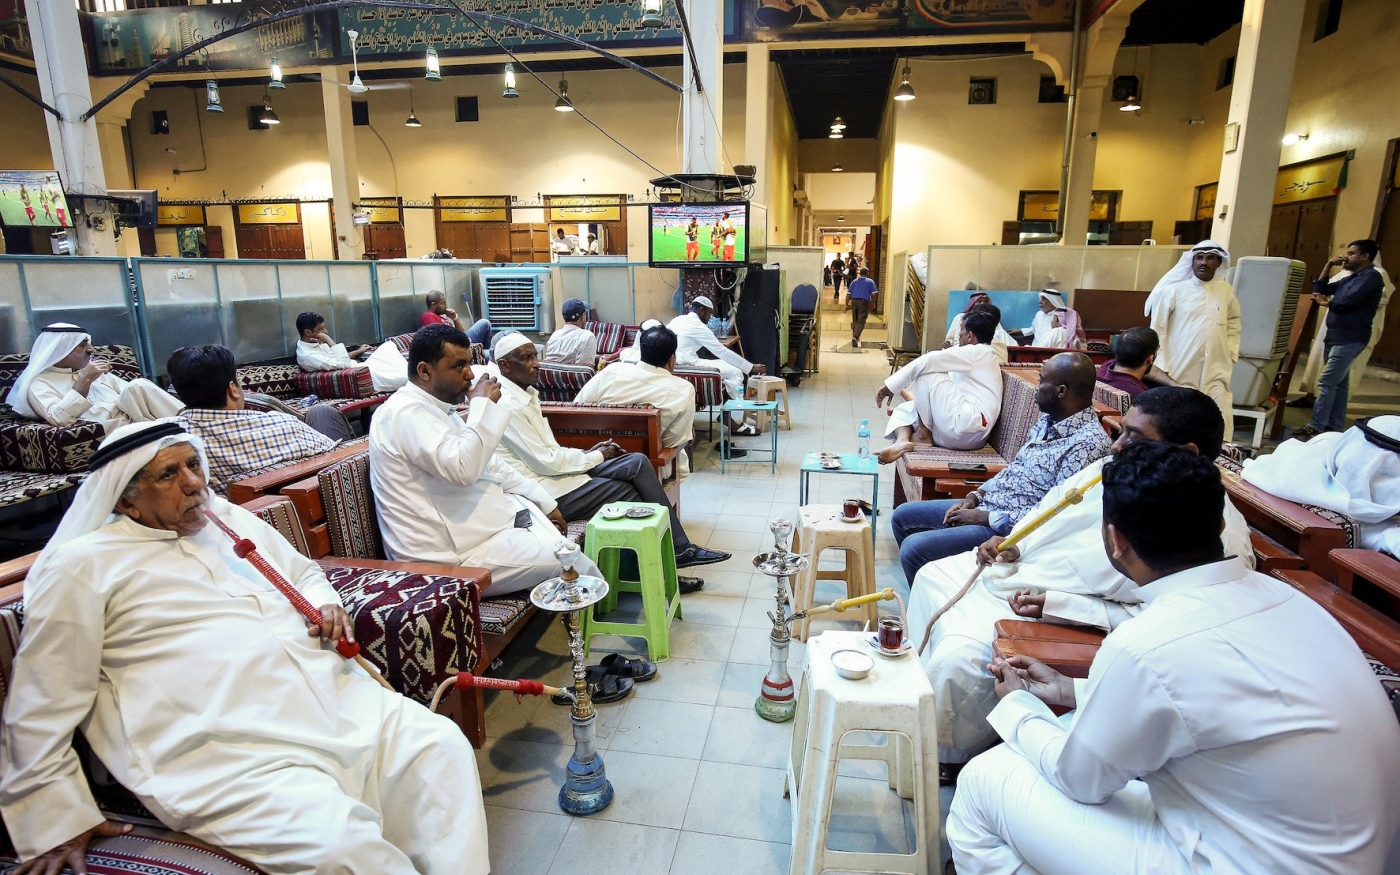 Des hommes sont assis dans un café au Koweït (AFP/Yasser al-Zayyat)